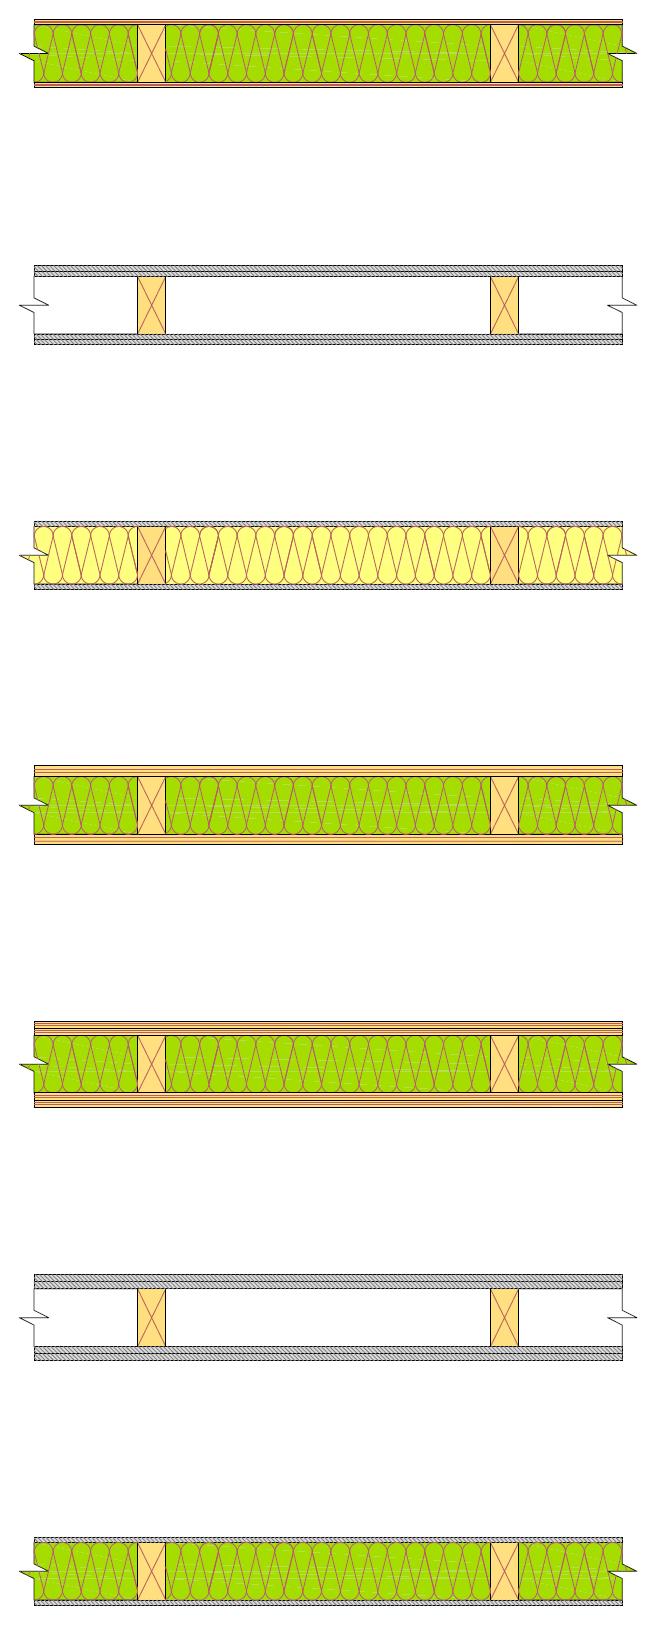 9.0 OSASTOIVIA SEINÄRAKENTEITA Seuraavassa kuvassa on esitetty osastoivia ei-kantavia seinärakenteita.